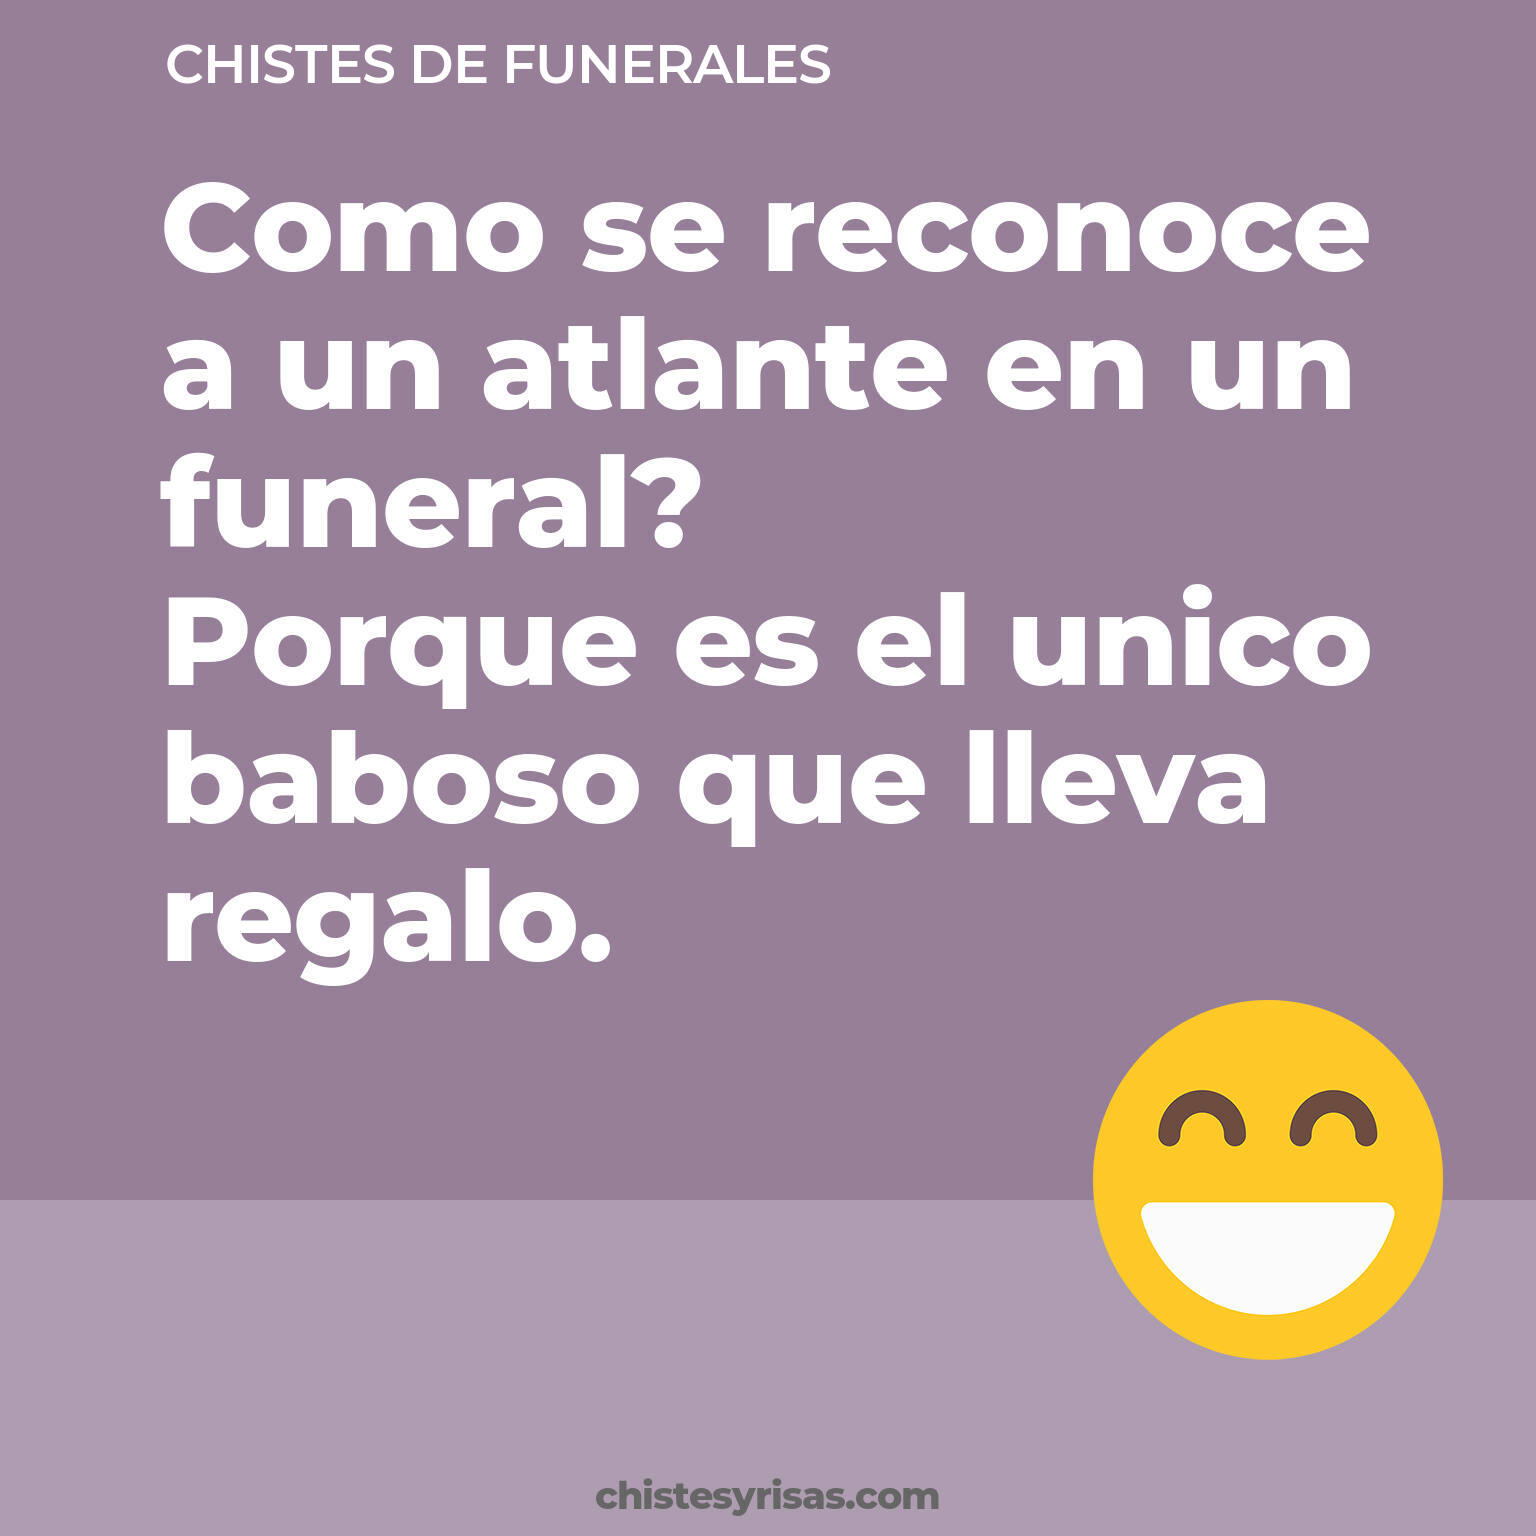 chistes de Funerales más graciosos